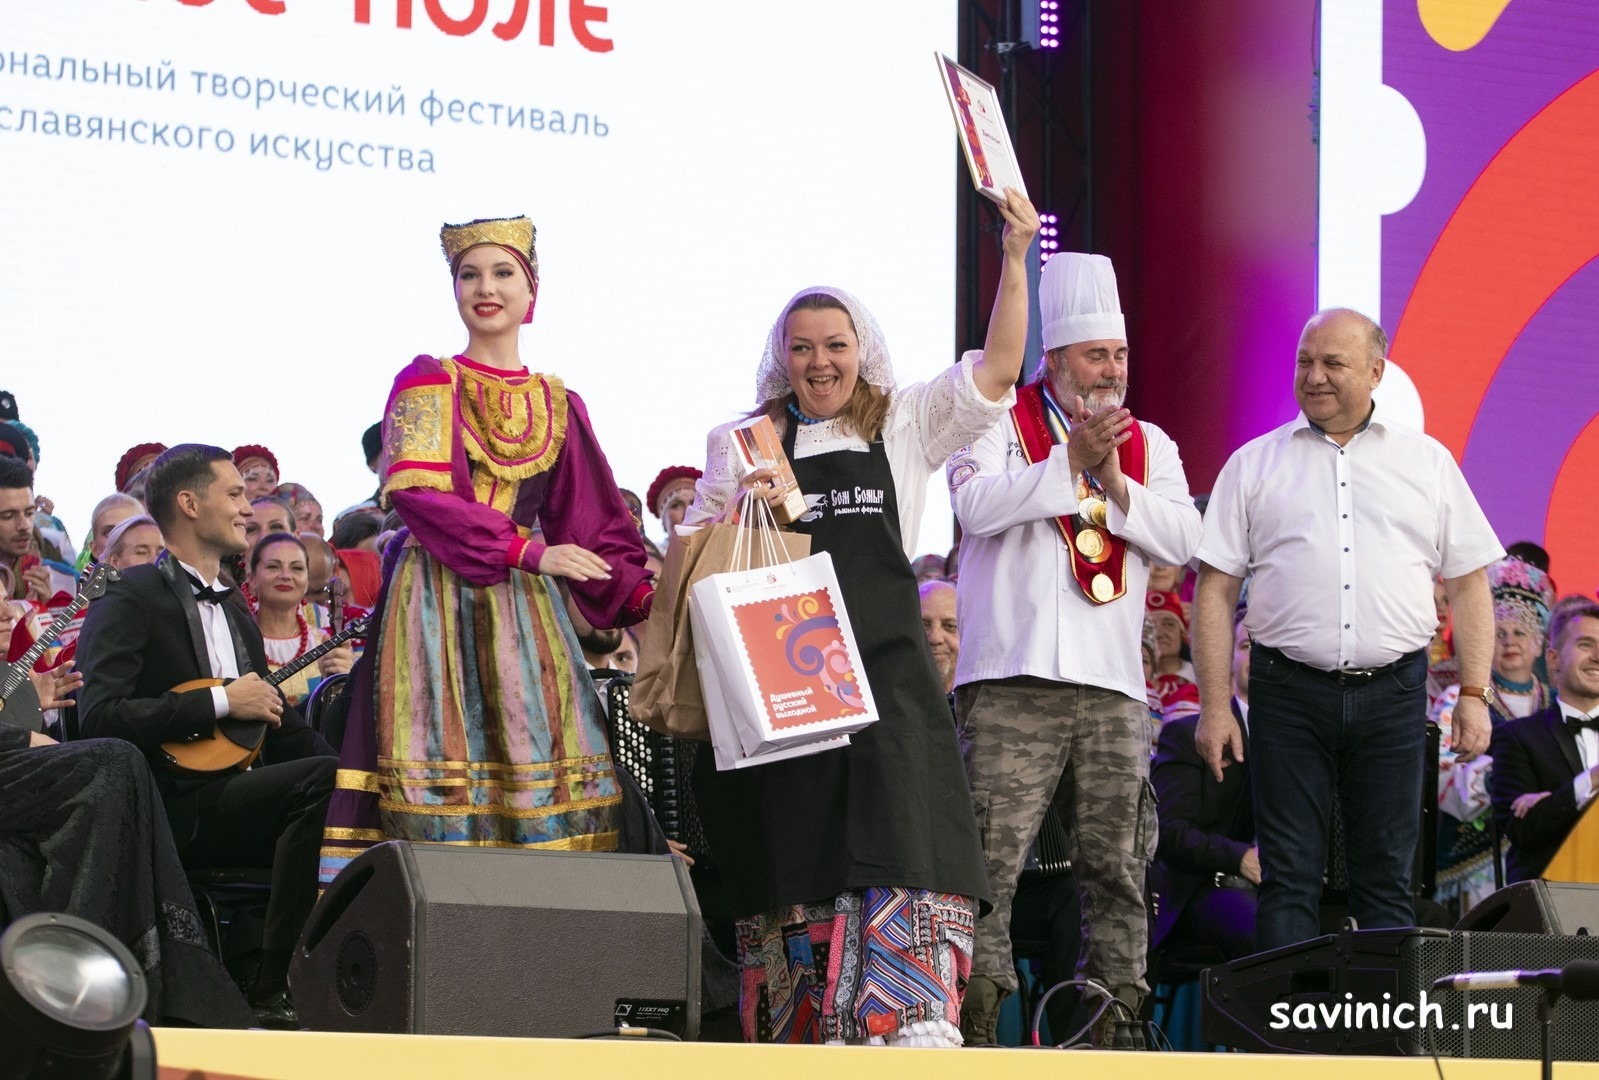 Награждение победители конкурсных номинаций ХI межрегионального фестиваля славянских культур «Русское поле»